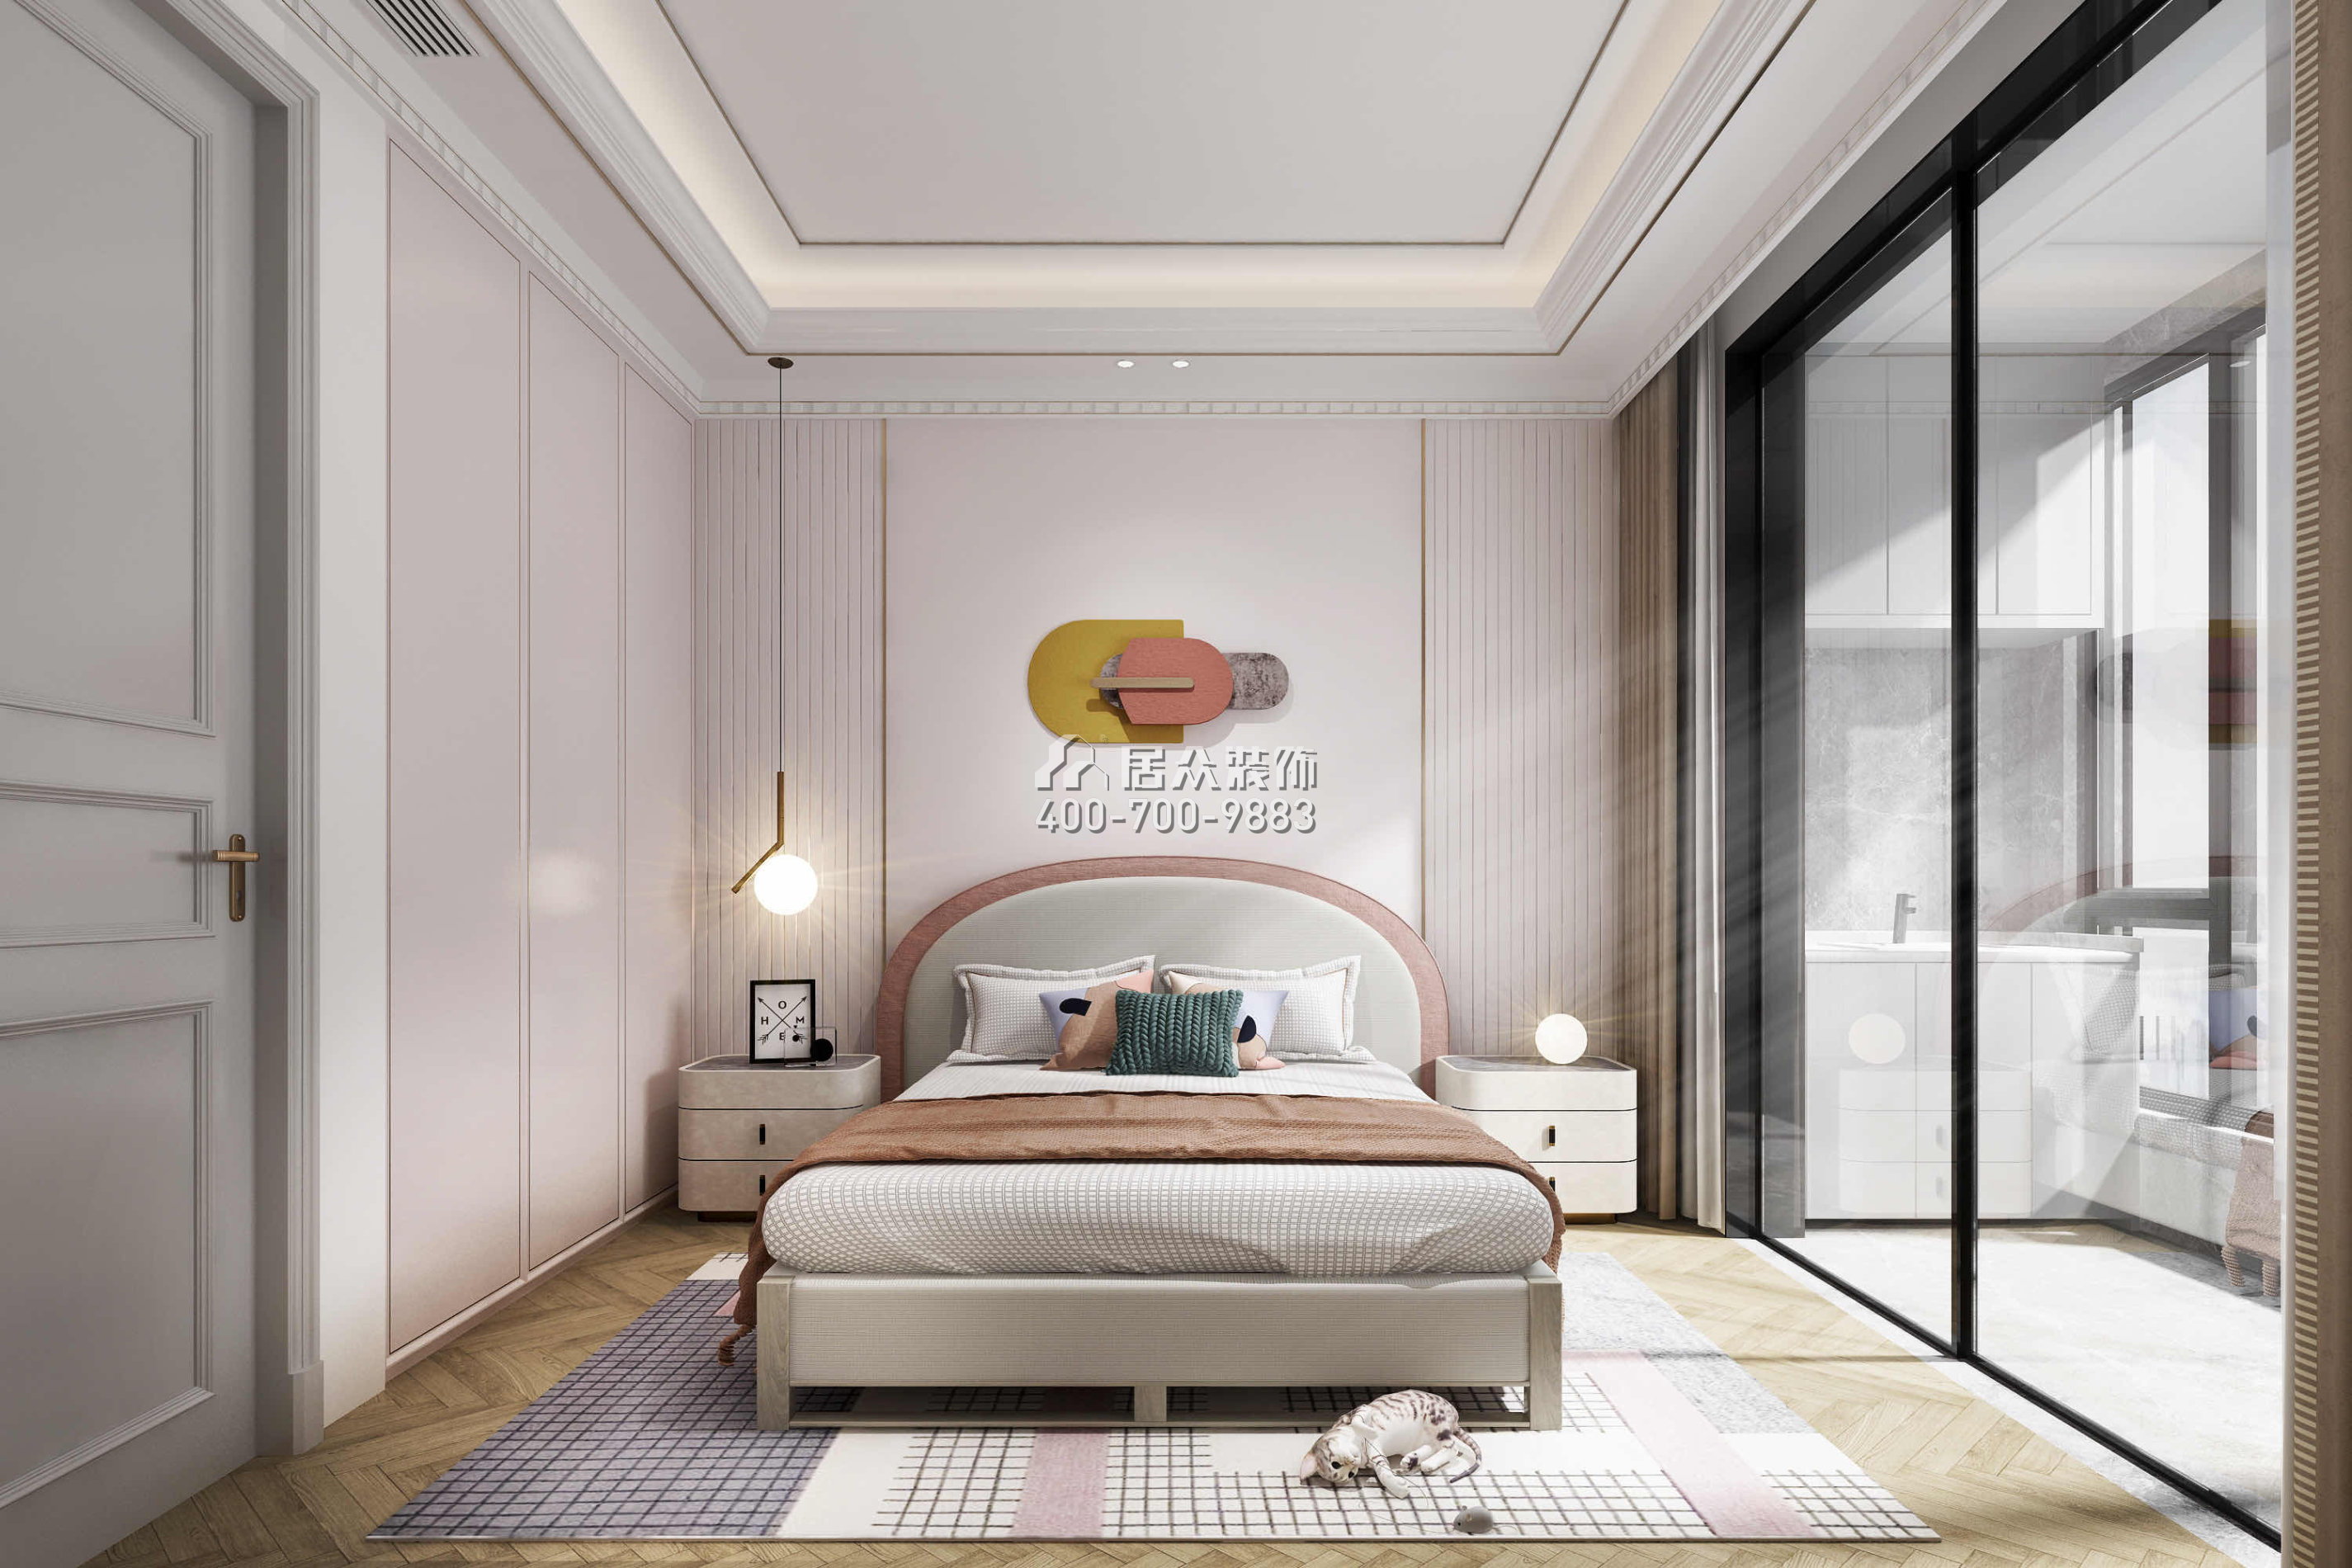 華爾頓1275145平方米混搭風格平層戶型臥室裝修效果圖